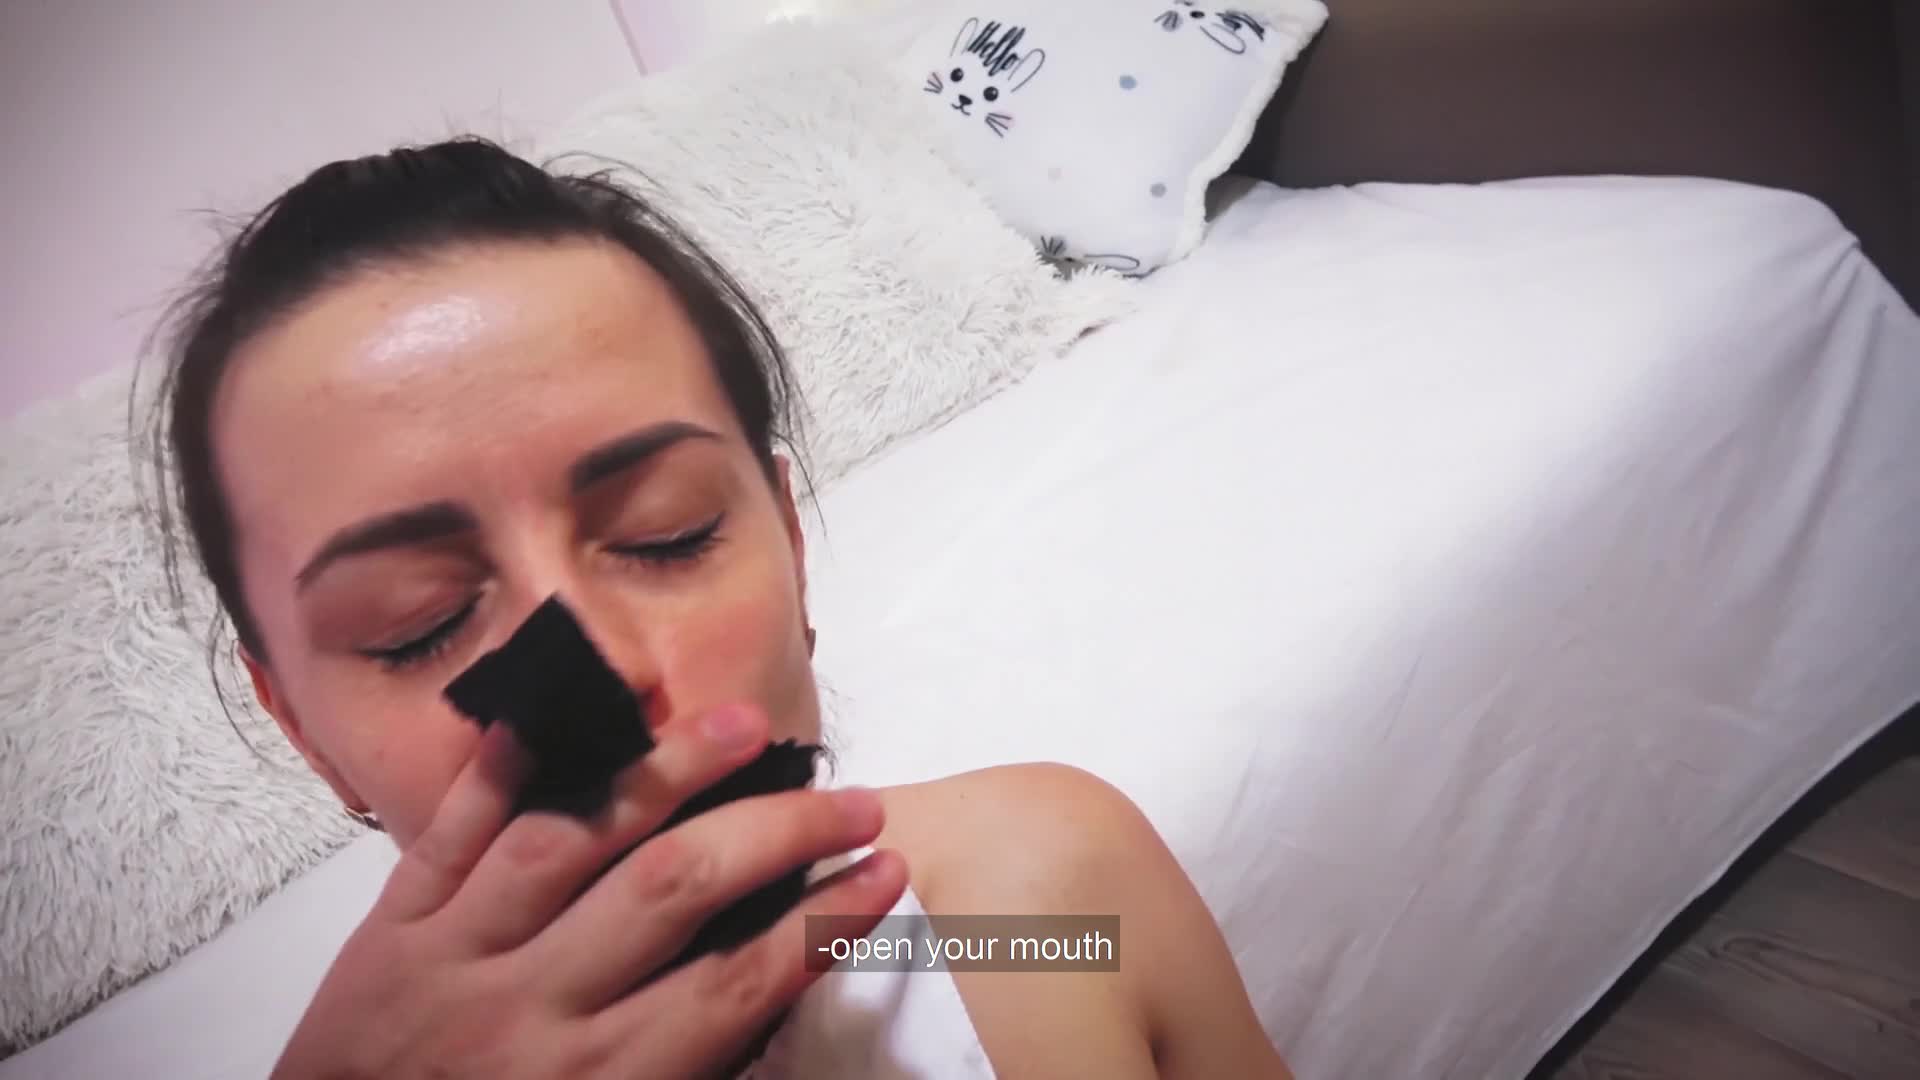 En ung tenåring i synsvideo liker det grovt og slurvete, så hun får sæd i ansiktet etter ekstrem dyp hals, som blir rotete bilde